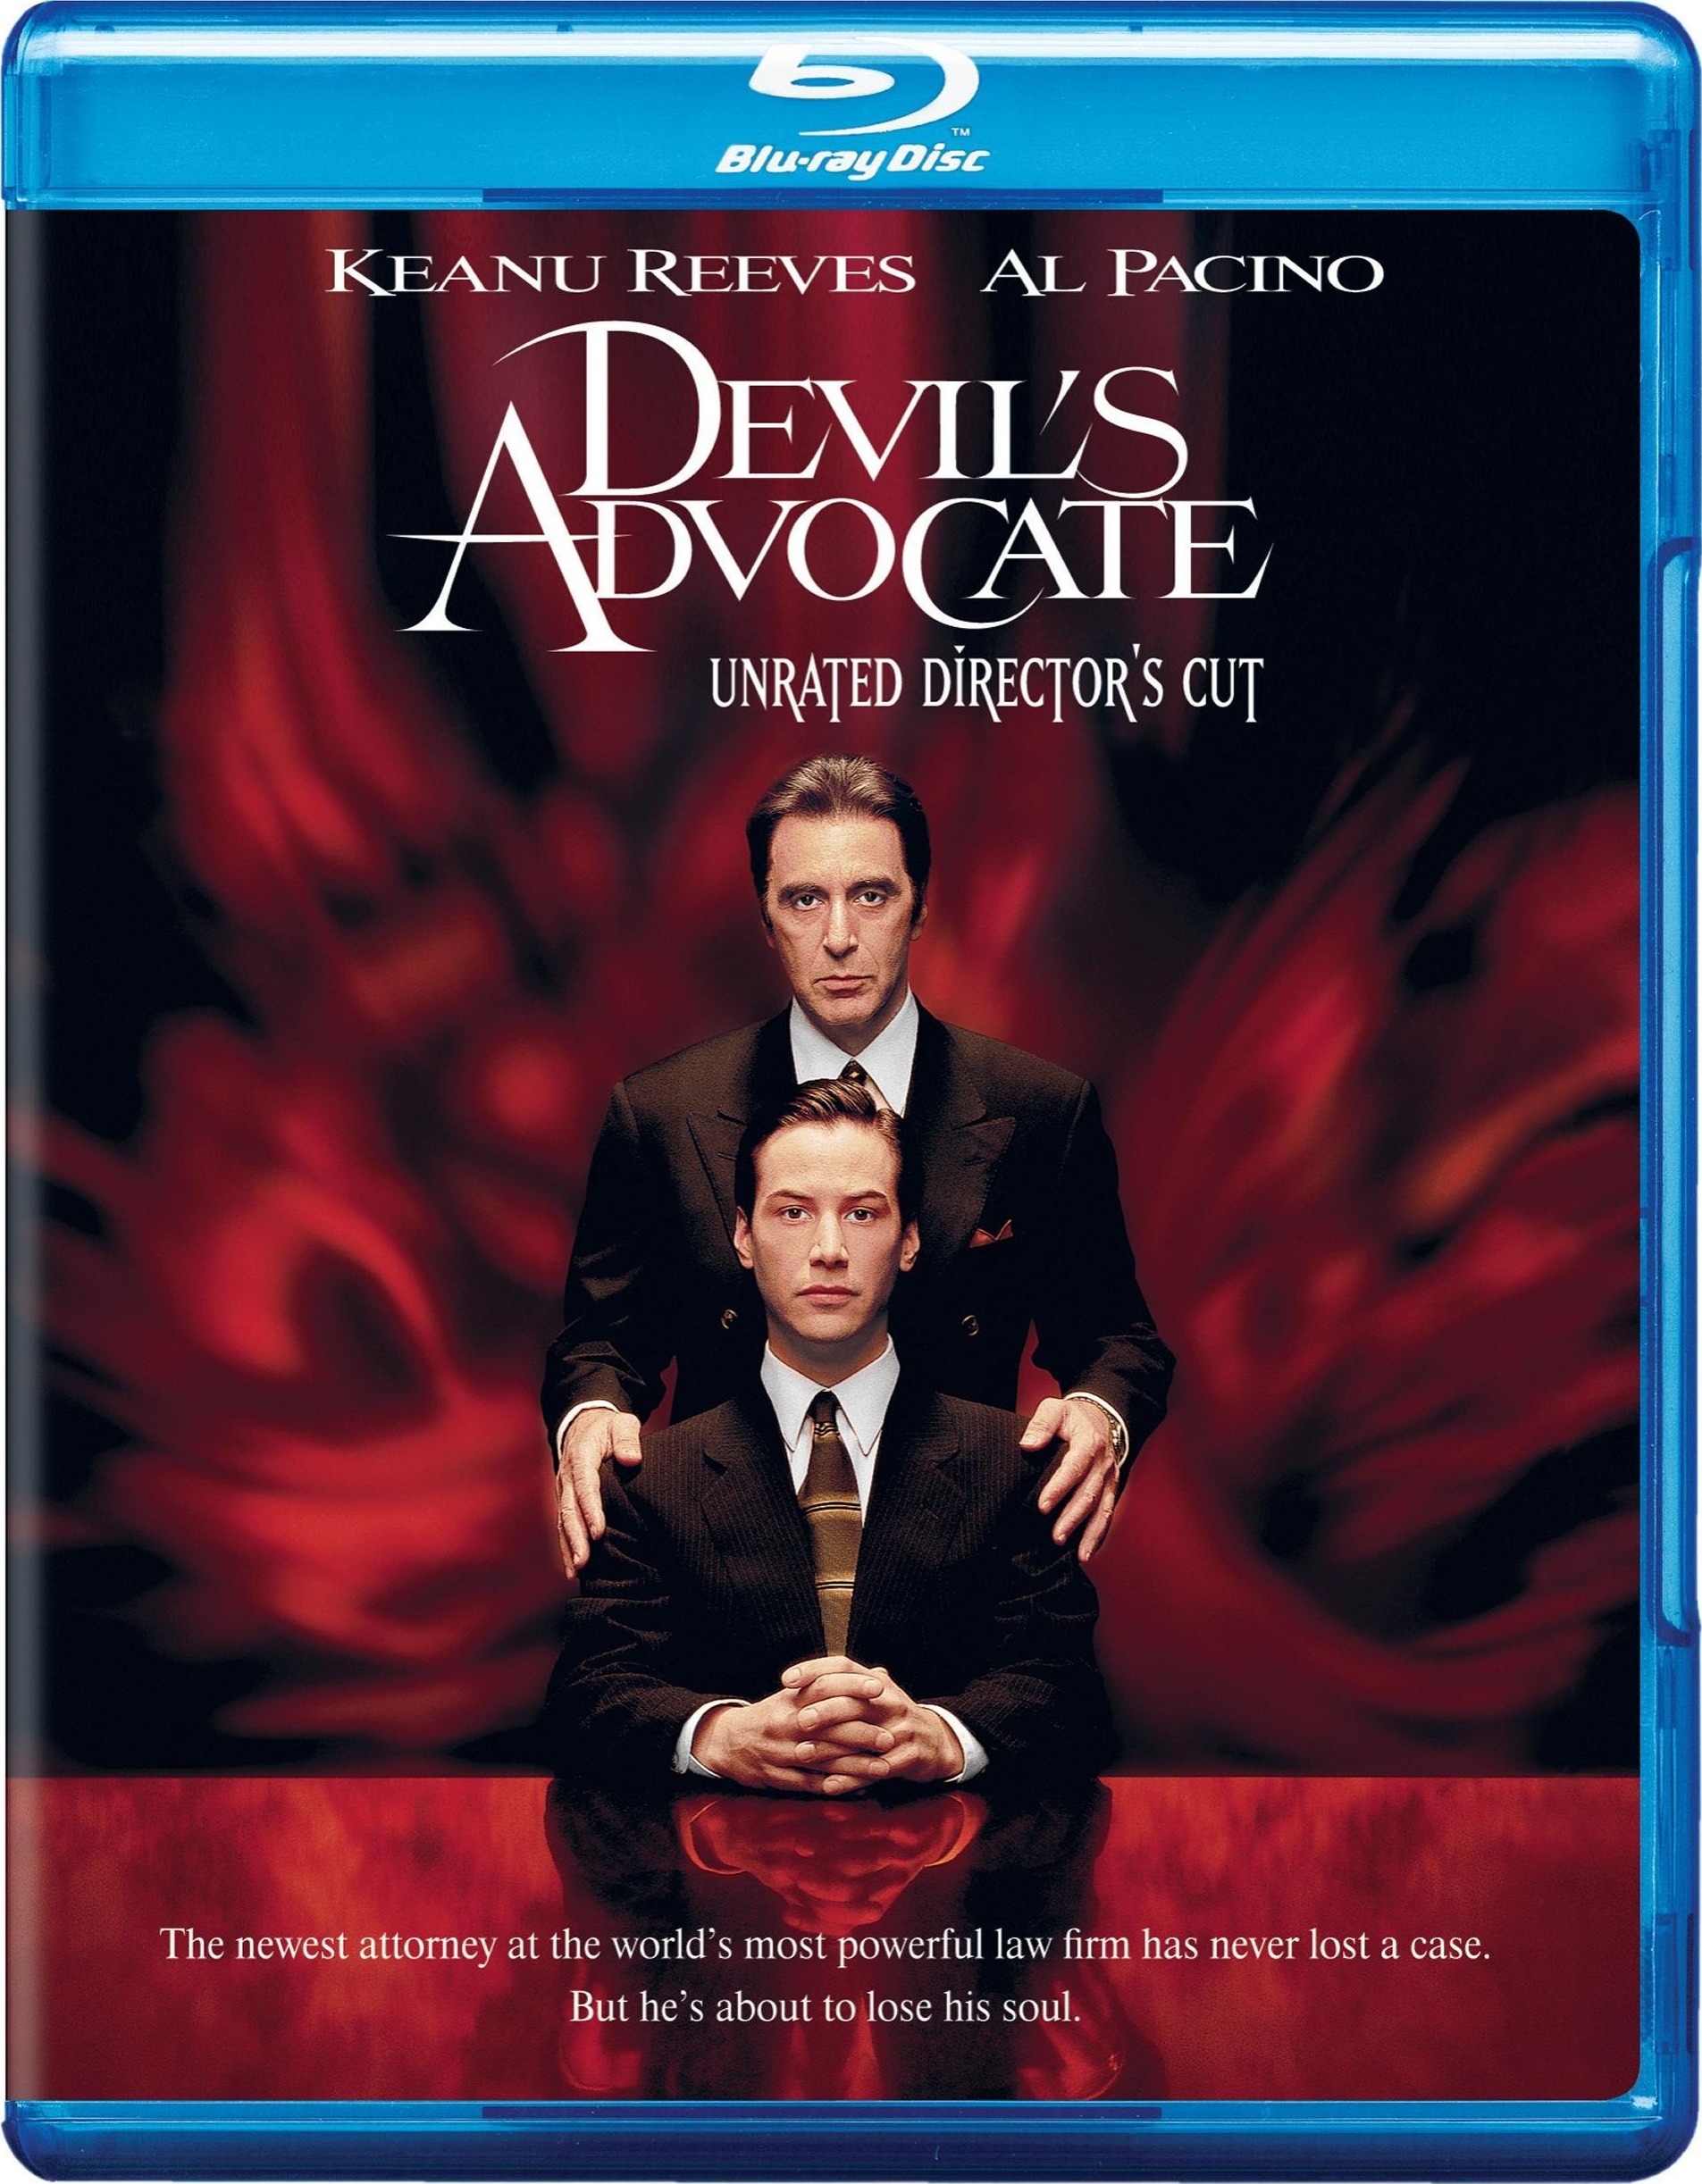 魔鬼代言人 / 追魂交易 / 火速大行动 [华纳版导演剪辑版 正片评论花絮中字 DIY国配简体字幕] The Devils Advocate 1997 DC Blu-ray 1080p blucook#355@CHDBits[43.93 GB]